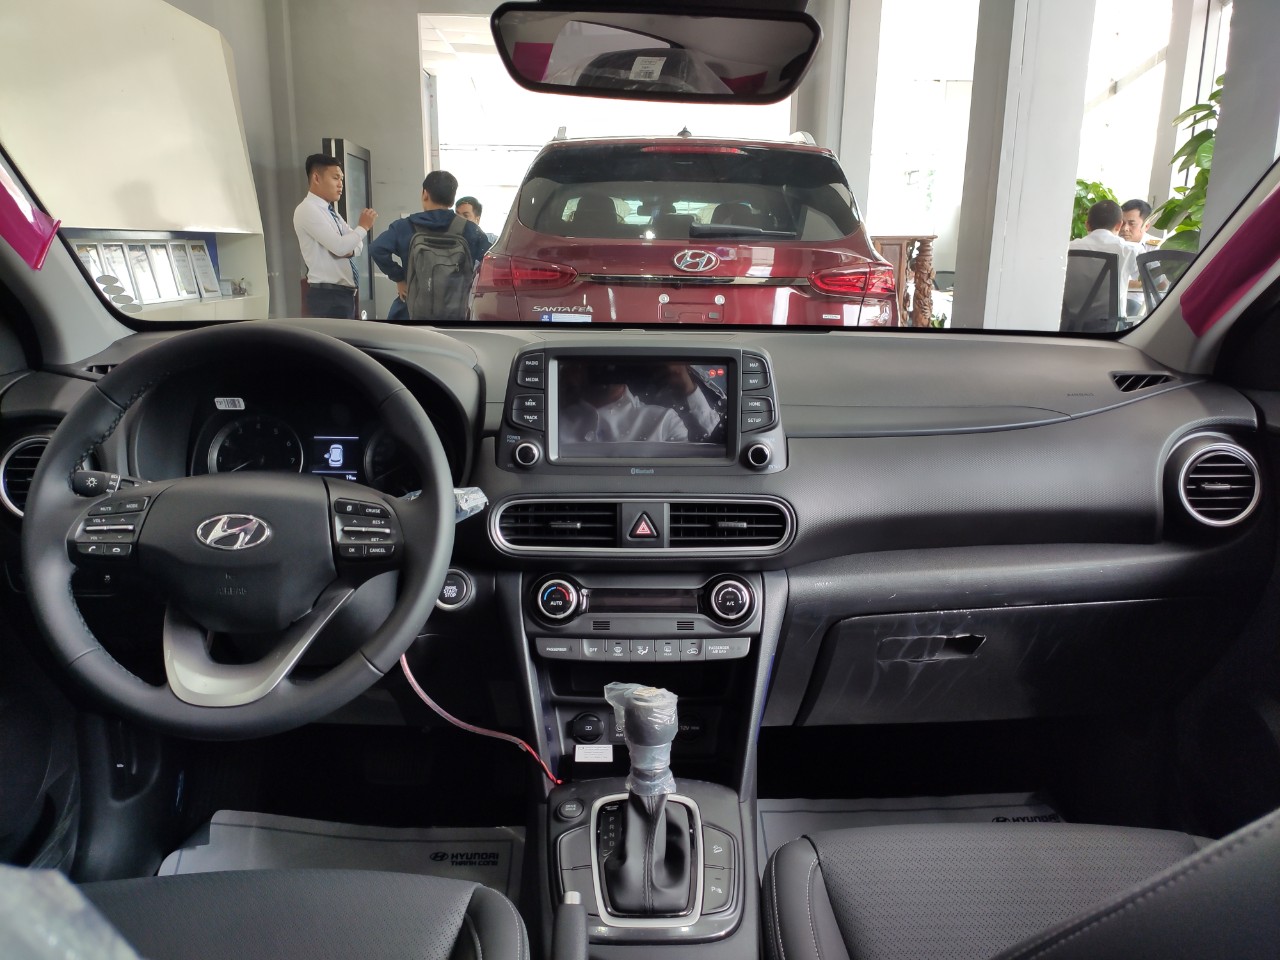 Hyundai Hyundai khác 1.6T-GDI 2019 - Kona 2019 1.6T-GDI 750 triệu/ chưa phải giá cuối nha ae